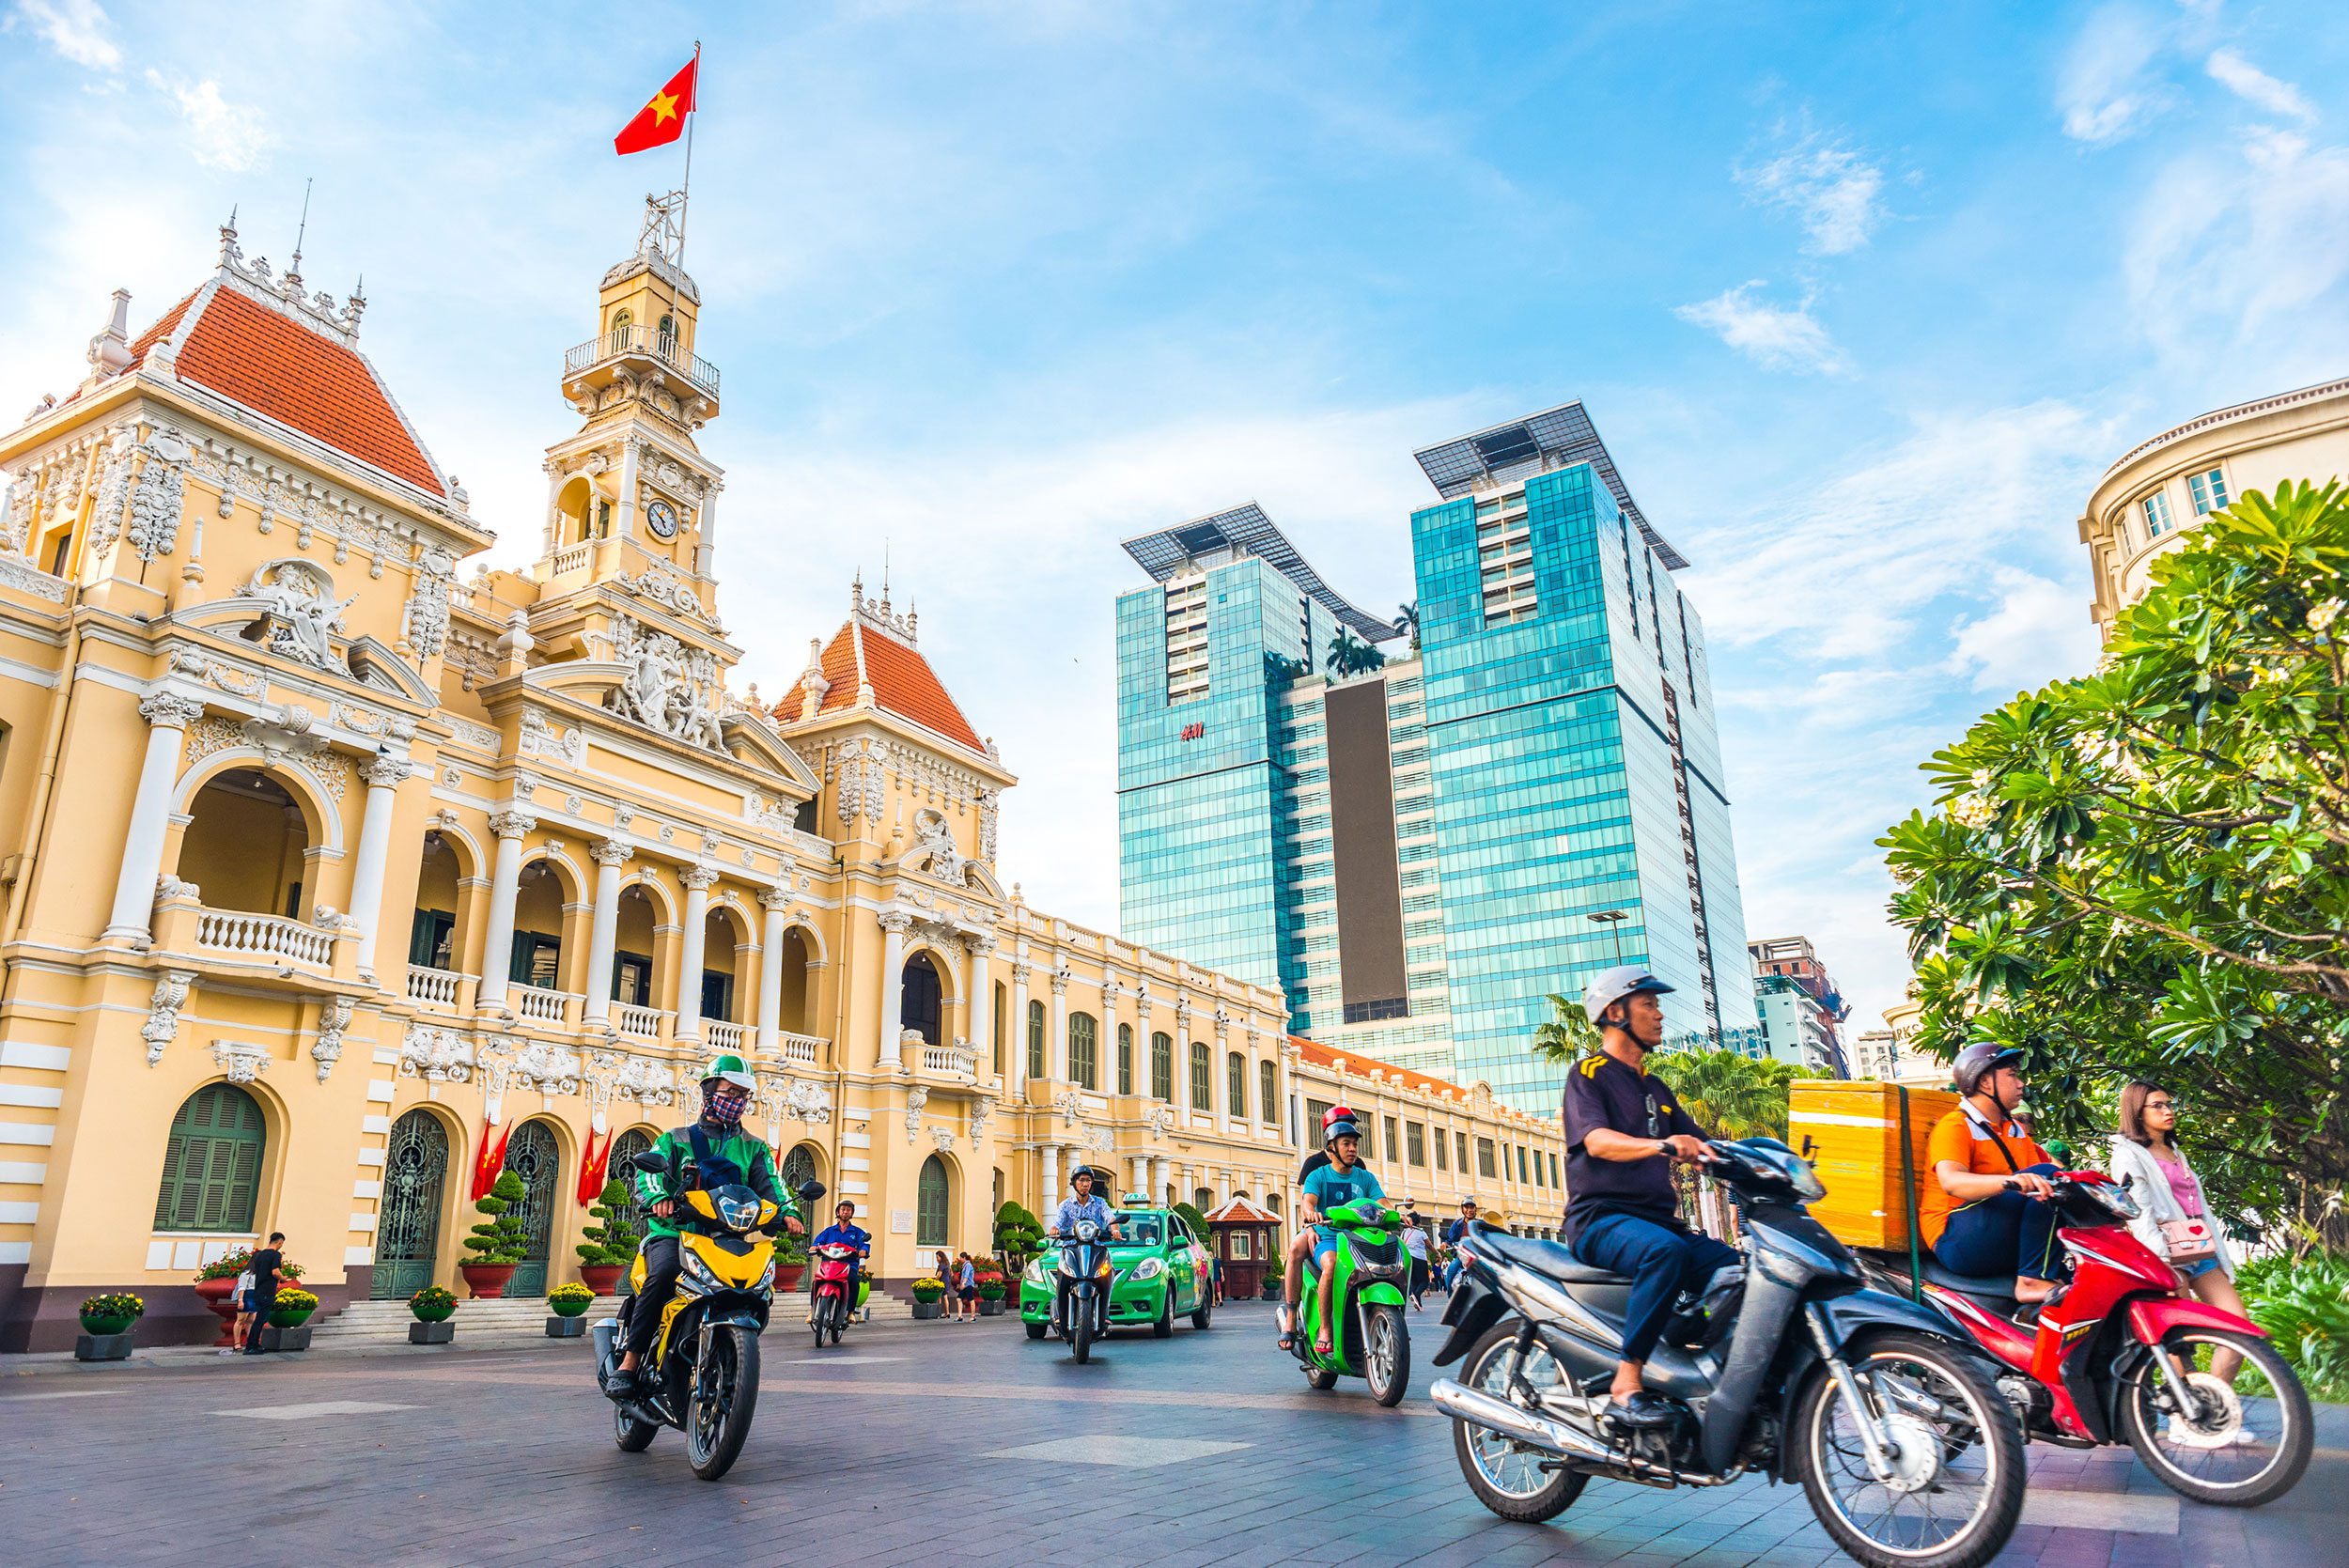 About Ho Chi Minh City